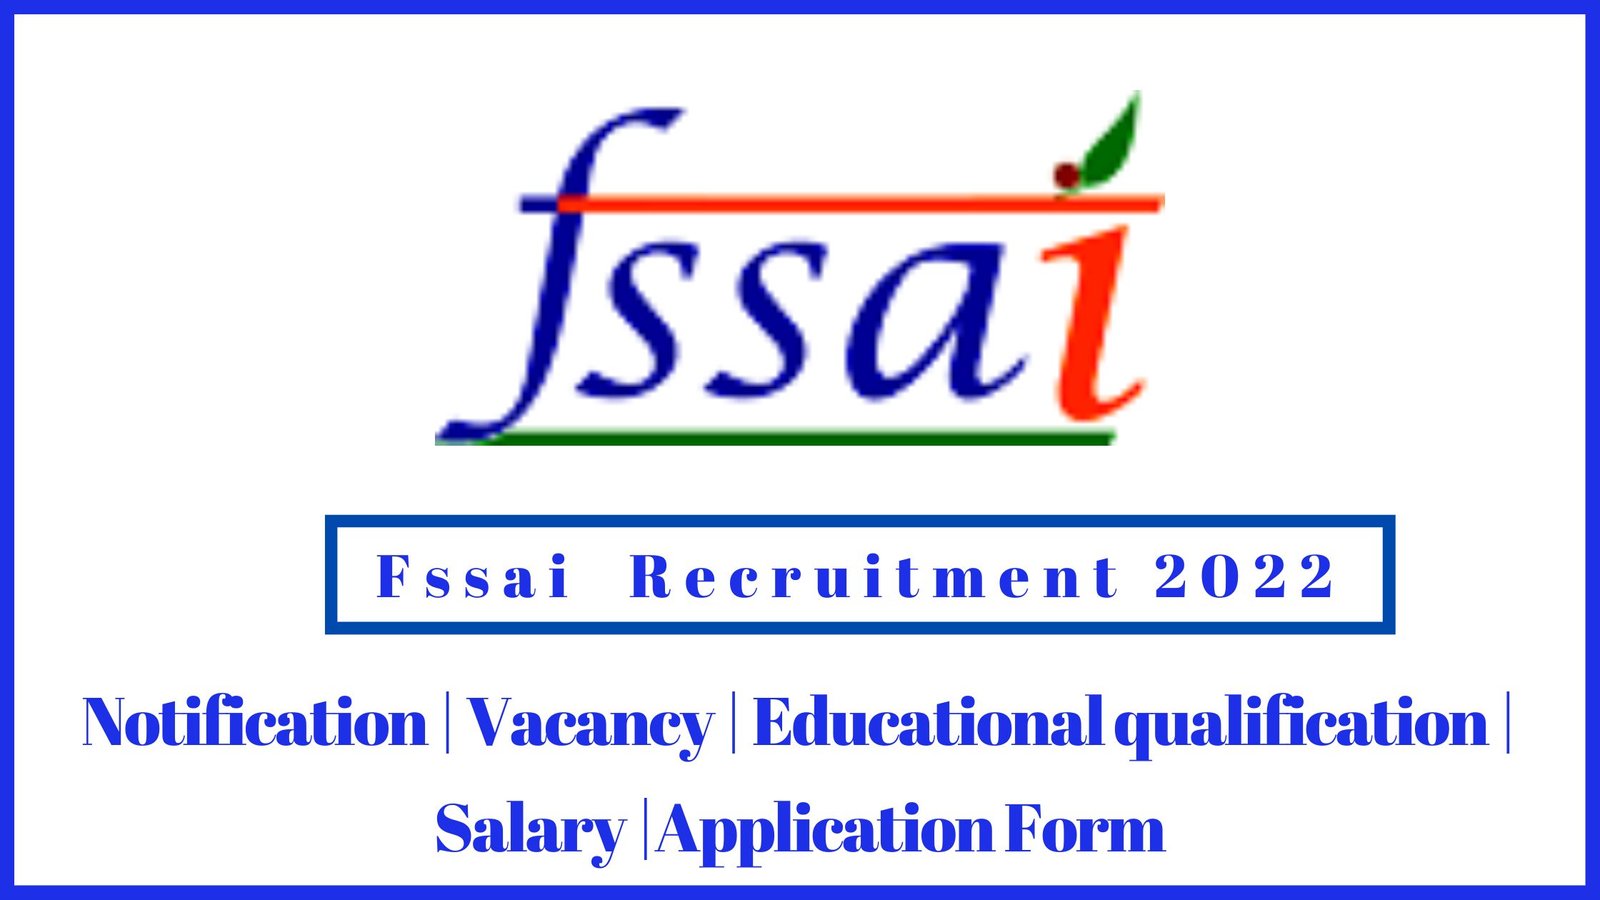 Fssai recruitment 2022 in tamil